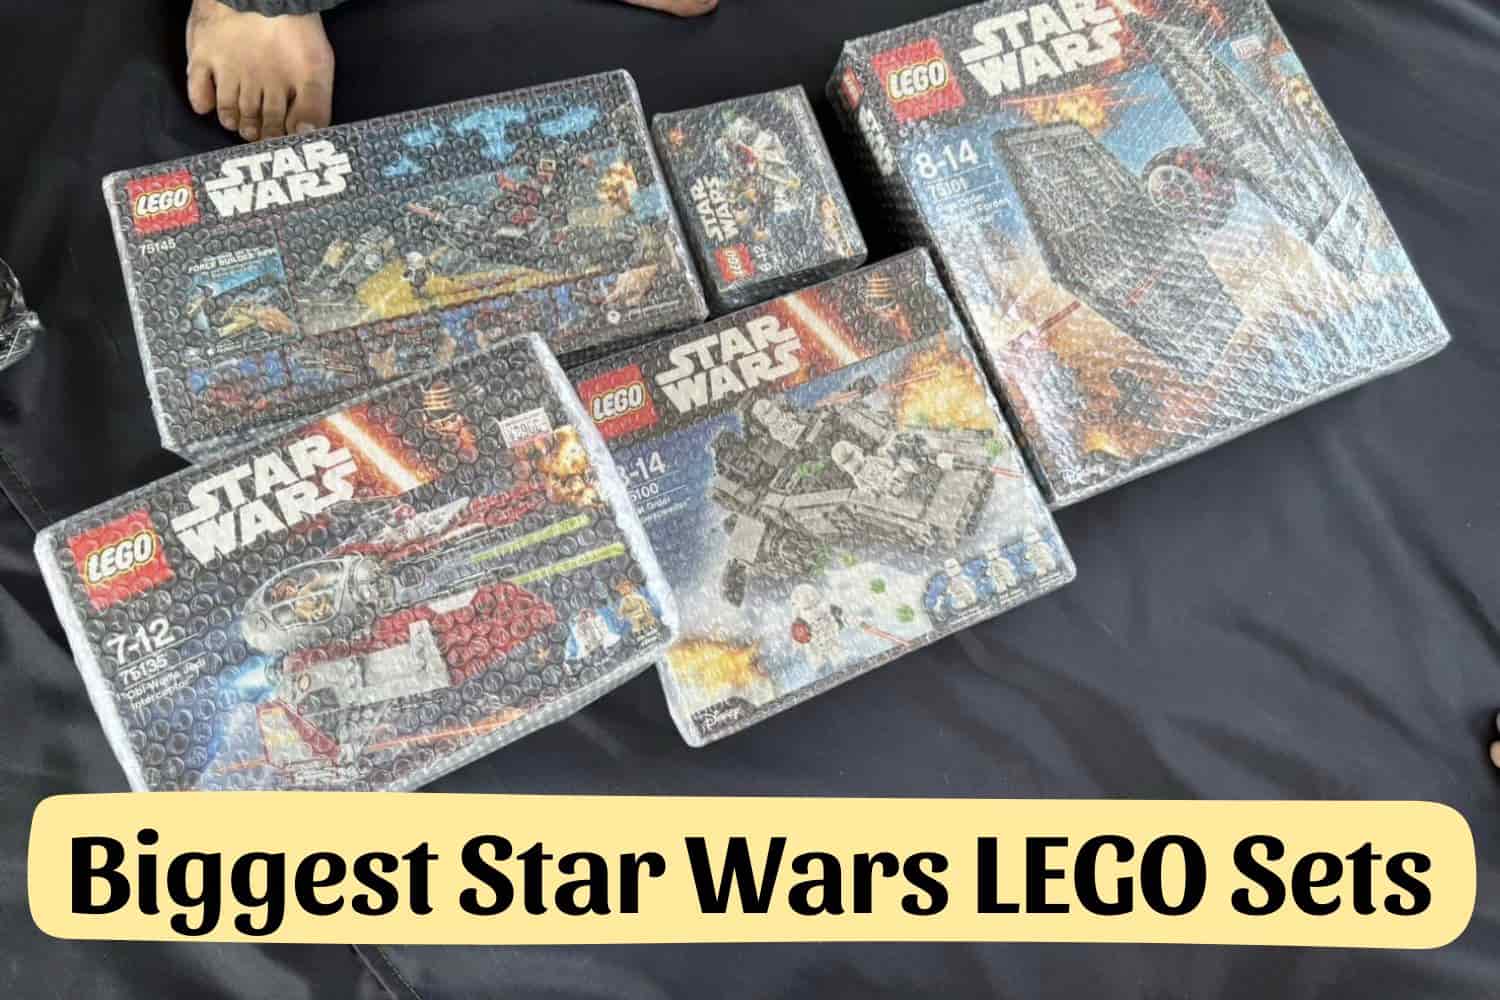 Biggest Star Wars LEGO Sets